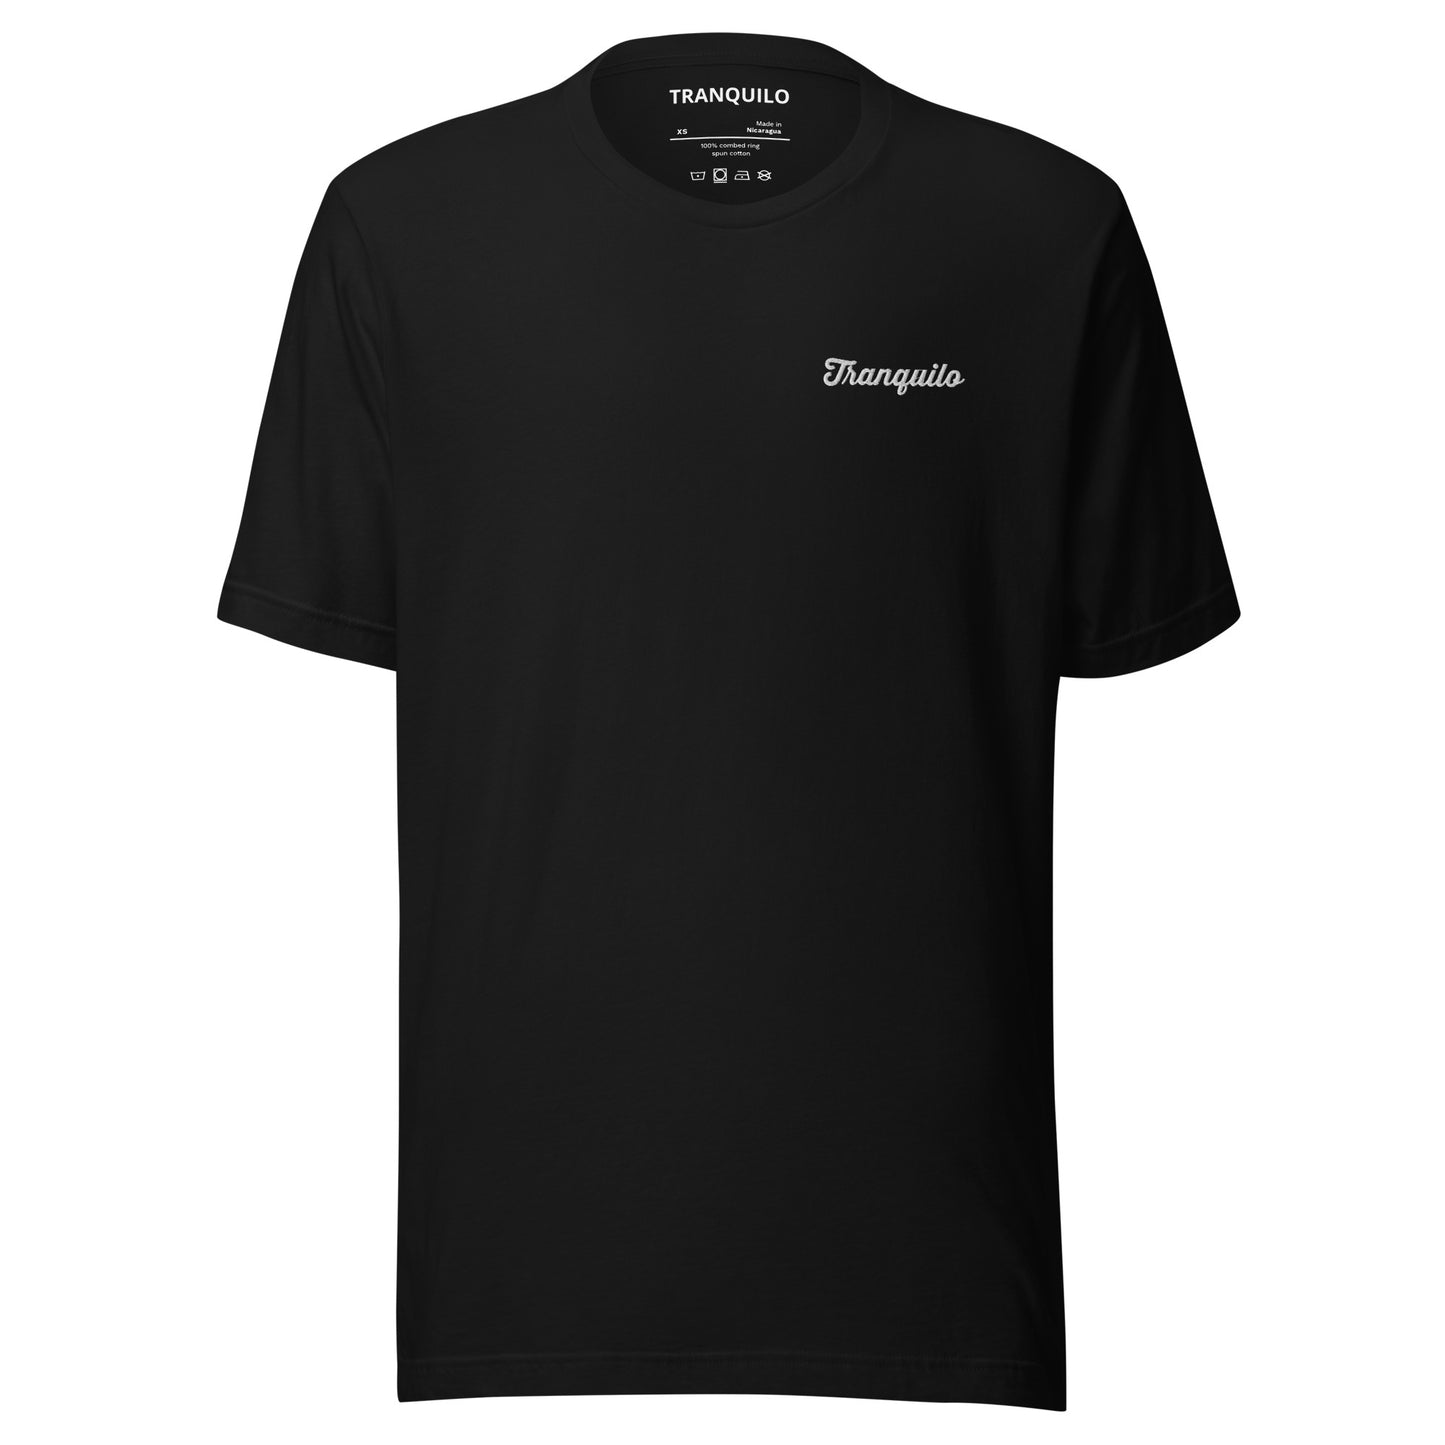 TRANQUILO Script T-shirt